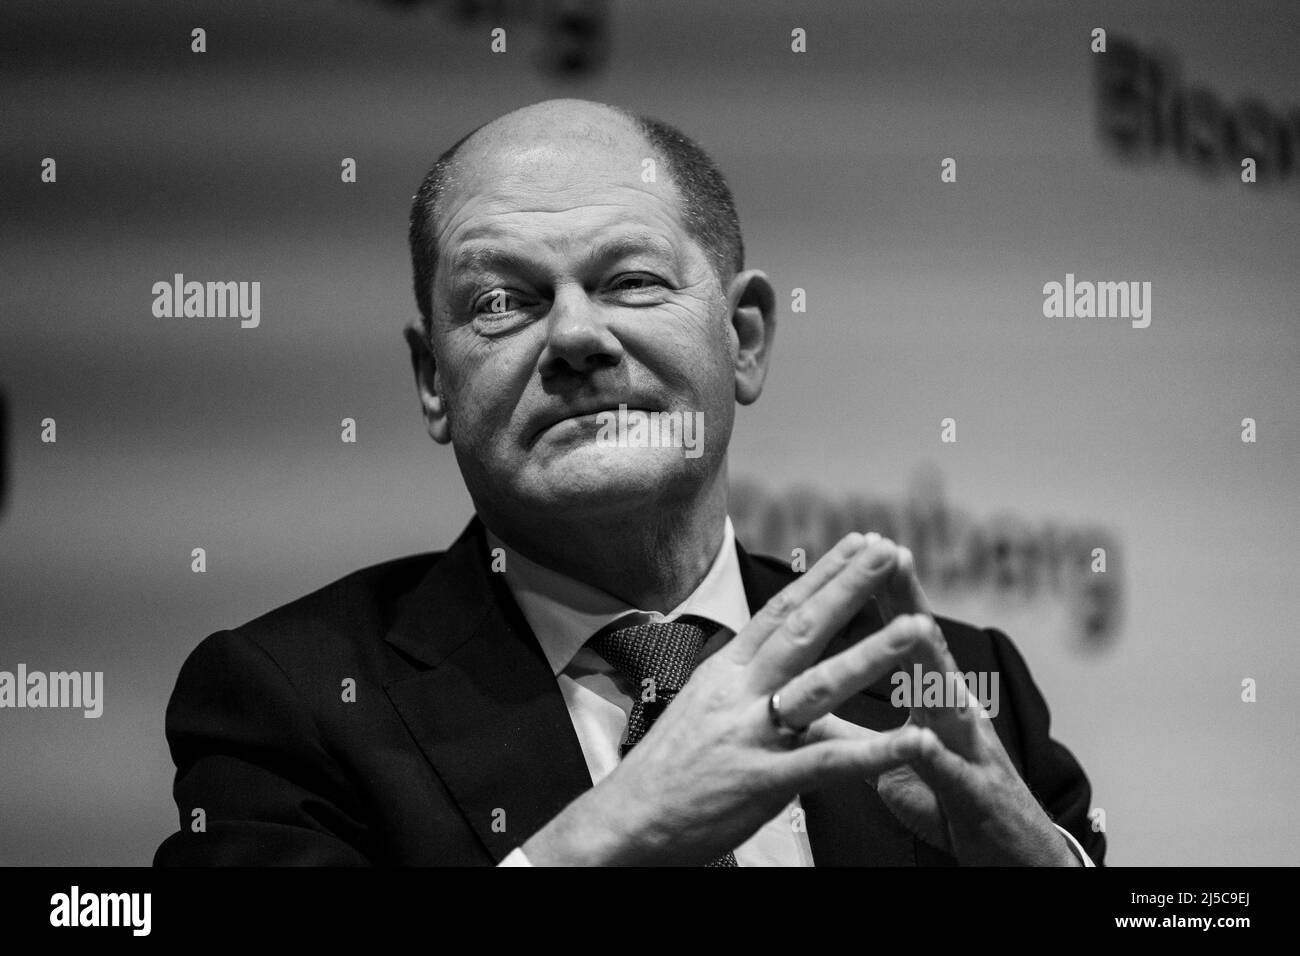 Cancelliere tedesco OLAF Scholz a Londra, febbraio 2019 Foto di David Levenson/Alamy Foto Stock